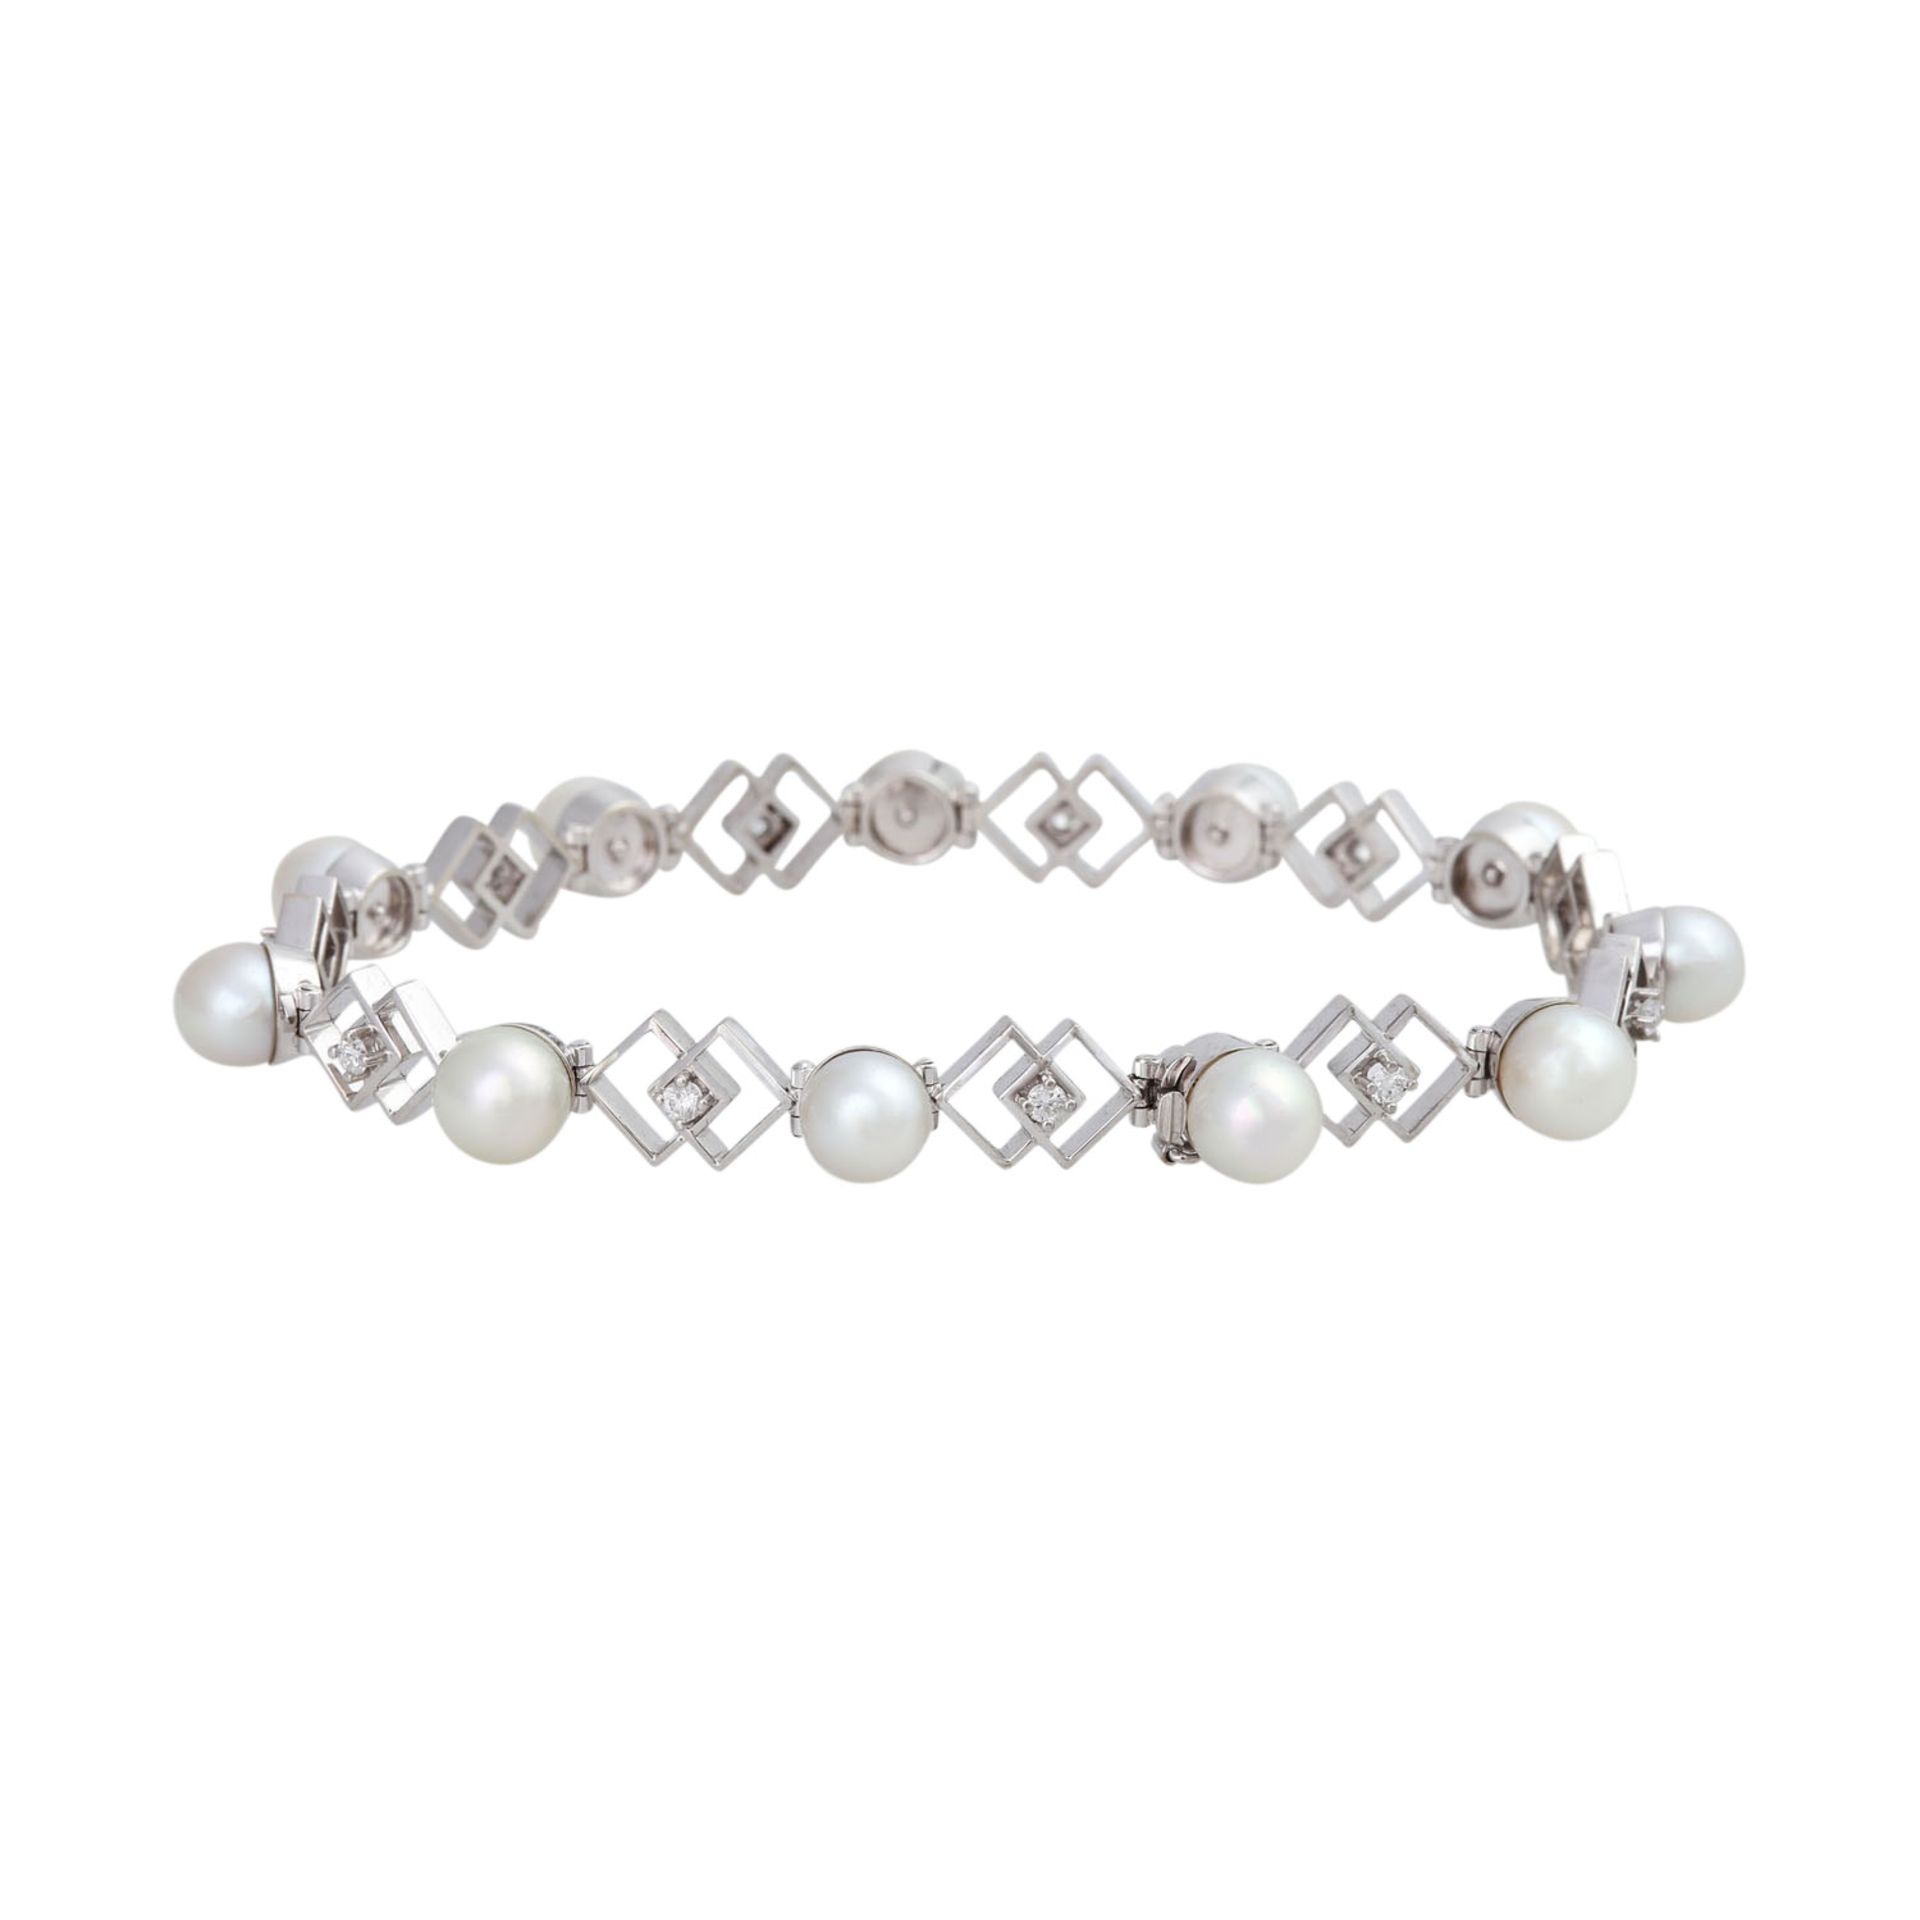 Armband mit Perlen und Brillantenvon zus. ca. 0,4 ct, gute Farbe u. Reinheit, Zuchtperlen ca. 6,2- - Bild 3 aus 5